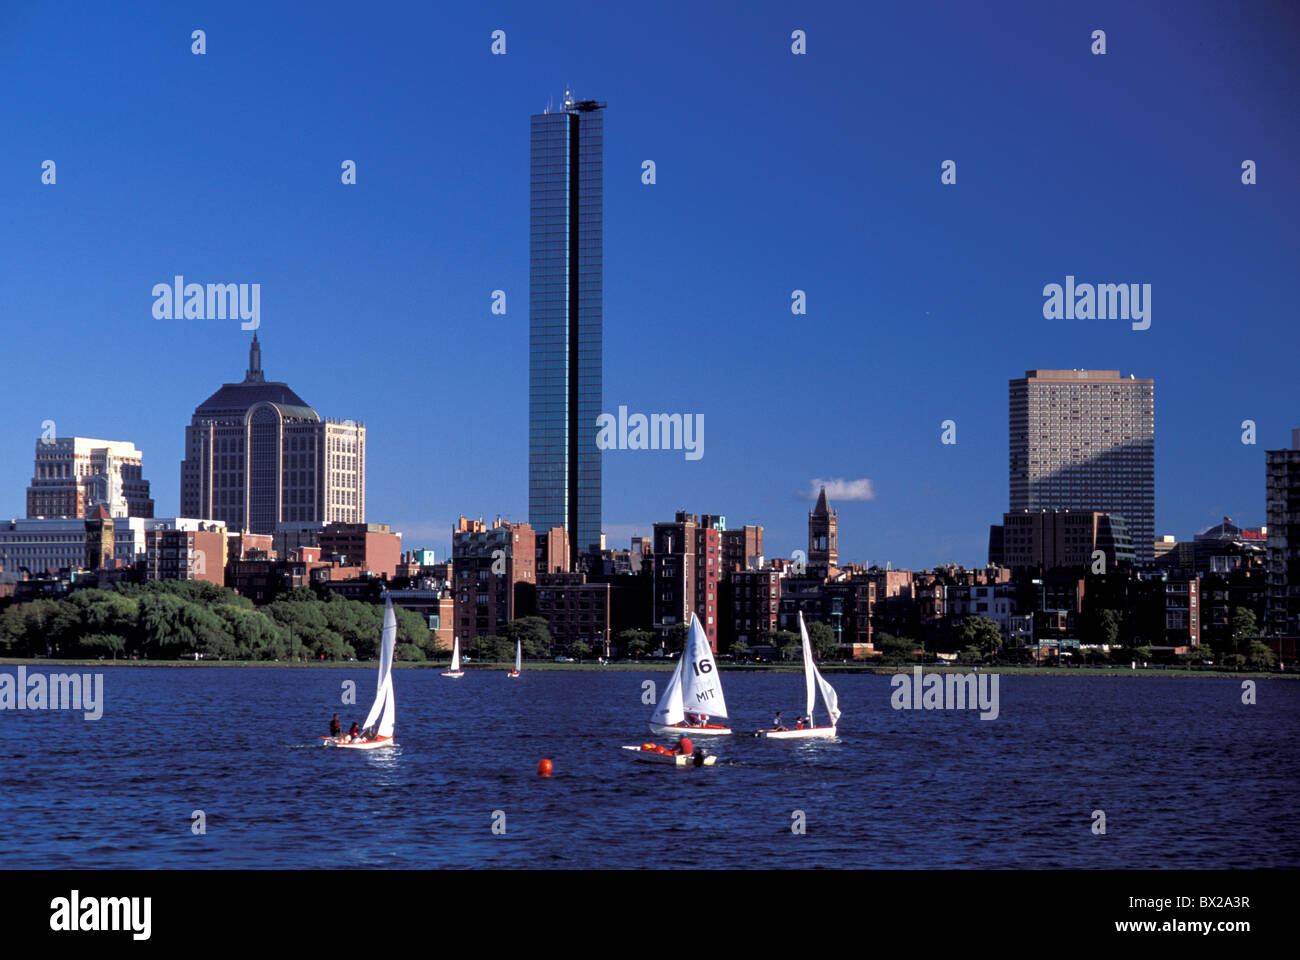 James River America Boston Massachusetts voiliers États-Unis Amérique du Nord USA crépuscule bateaux Banque D'Images